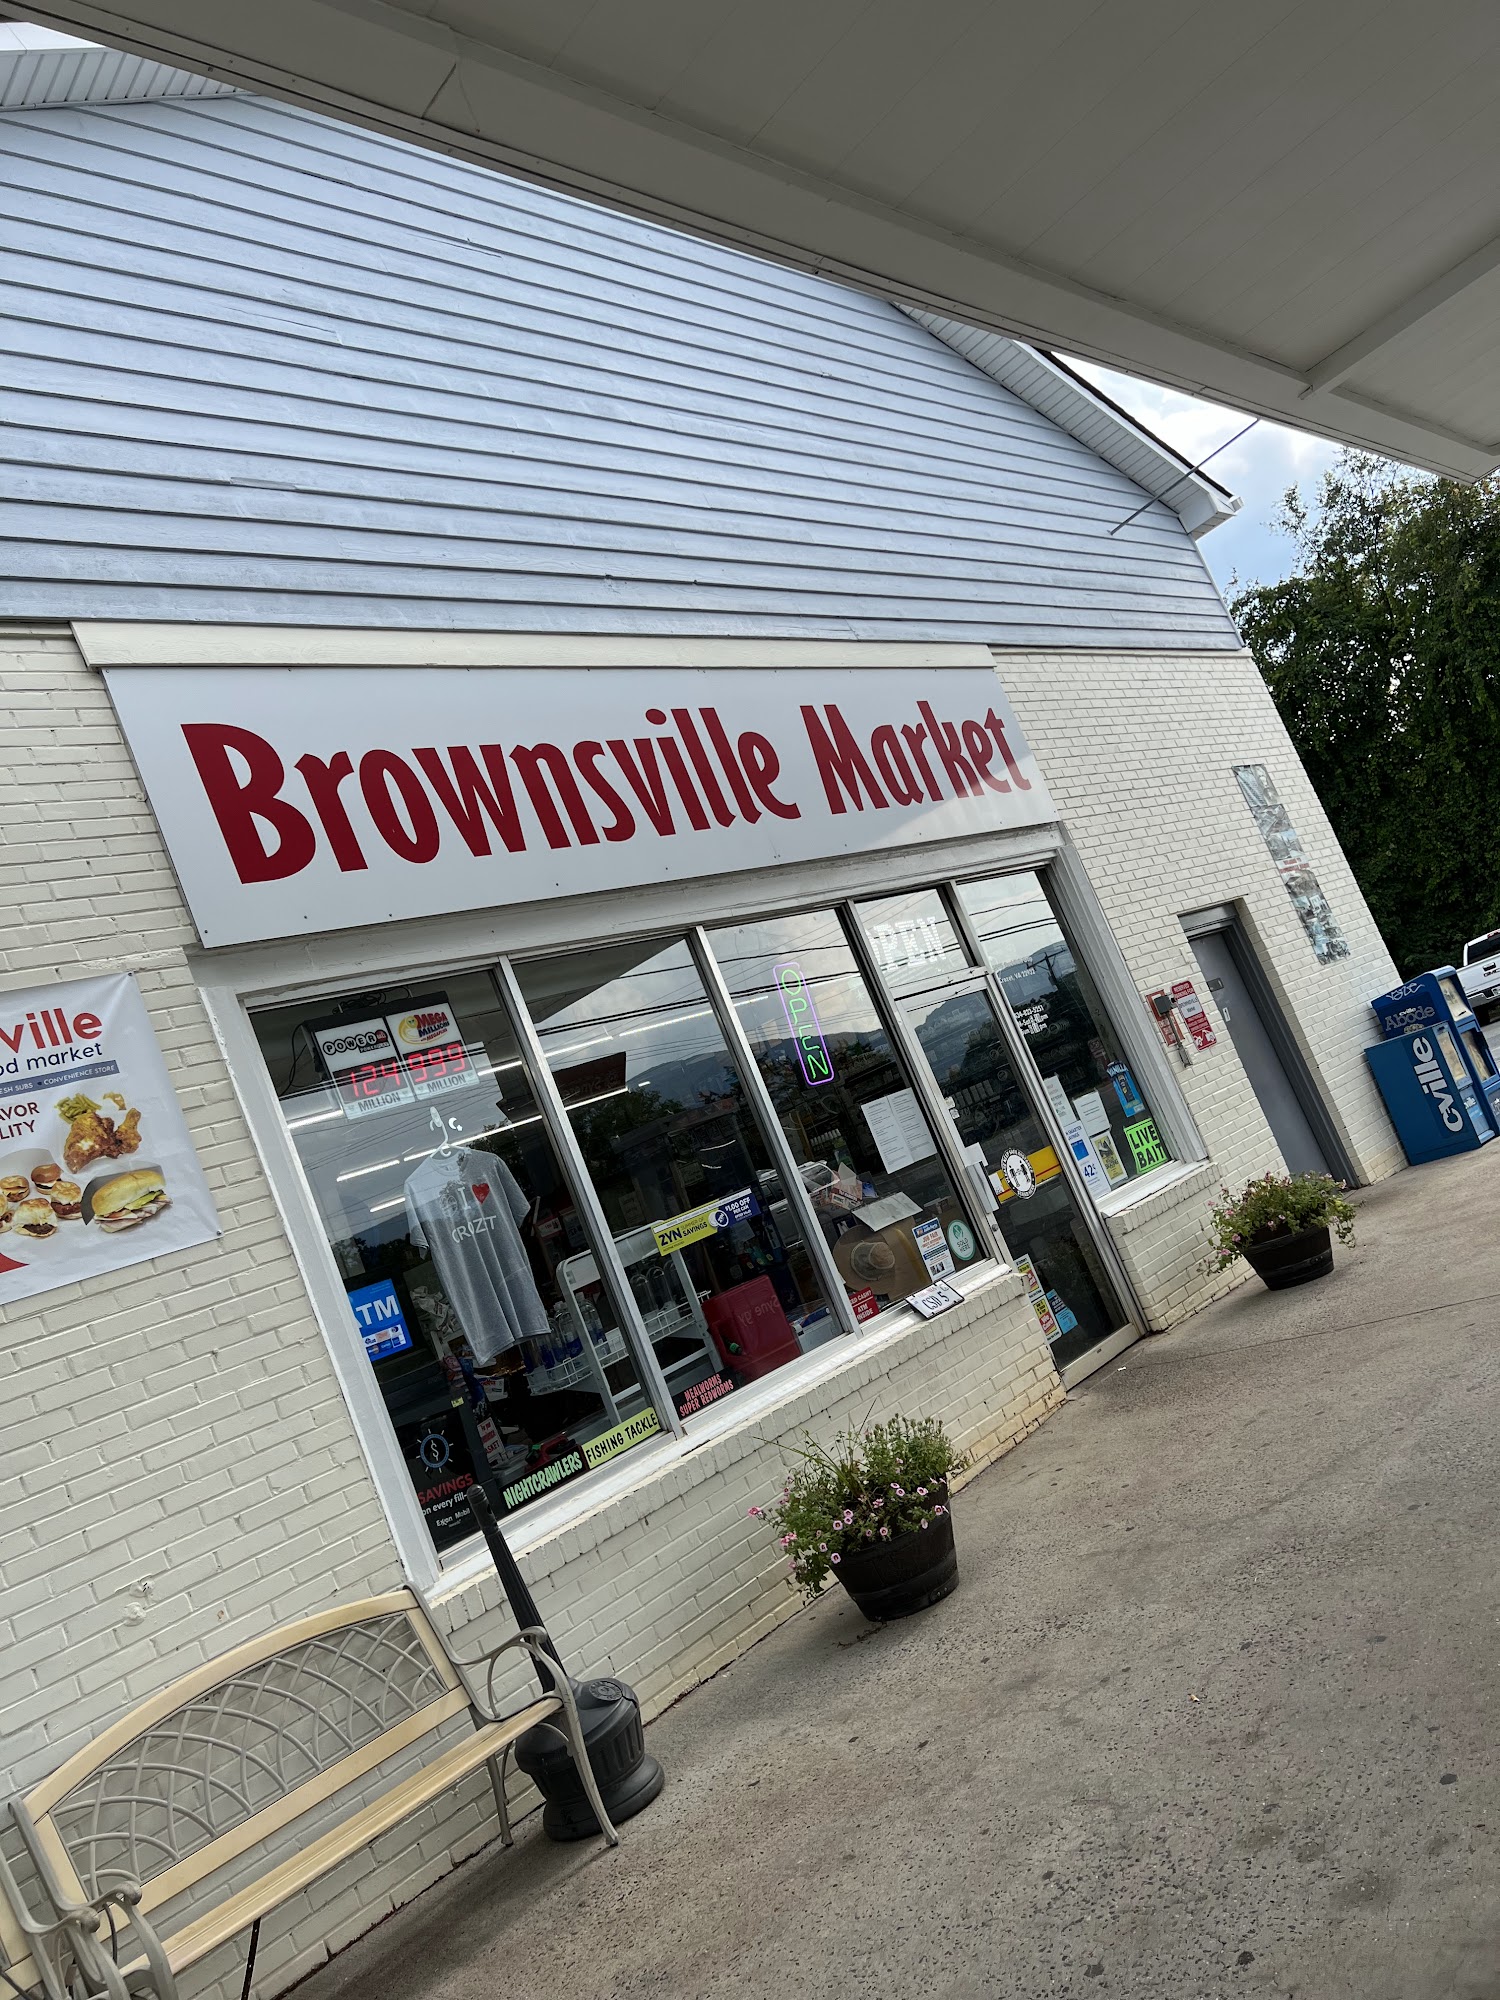 Brownsville Market